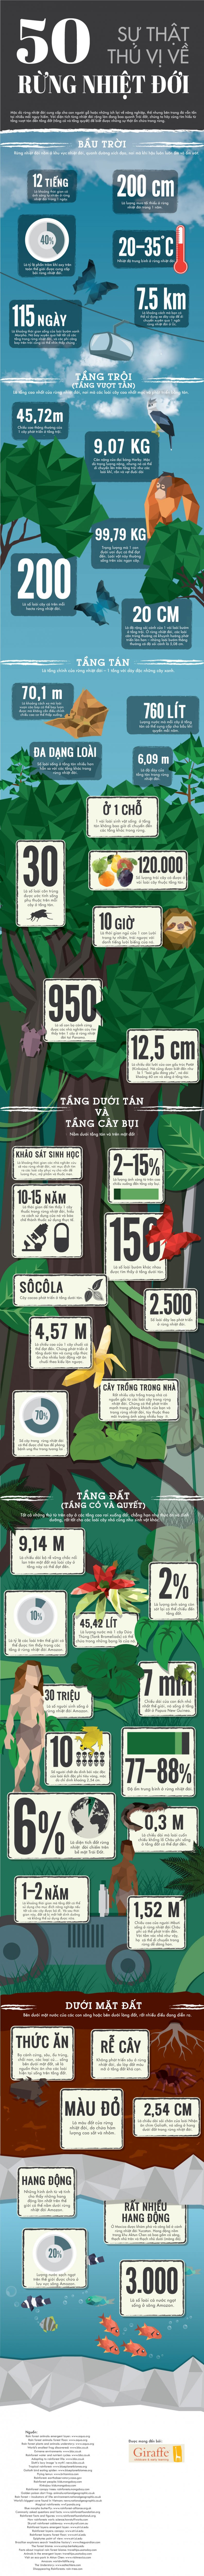 [Infographic] 50 sự thật thú vị bất ngờ về rừng nhiệt đới